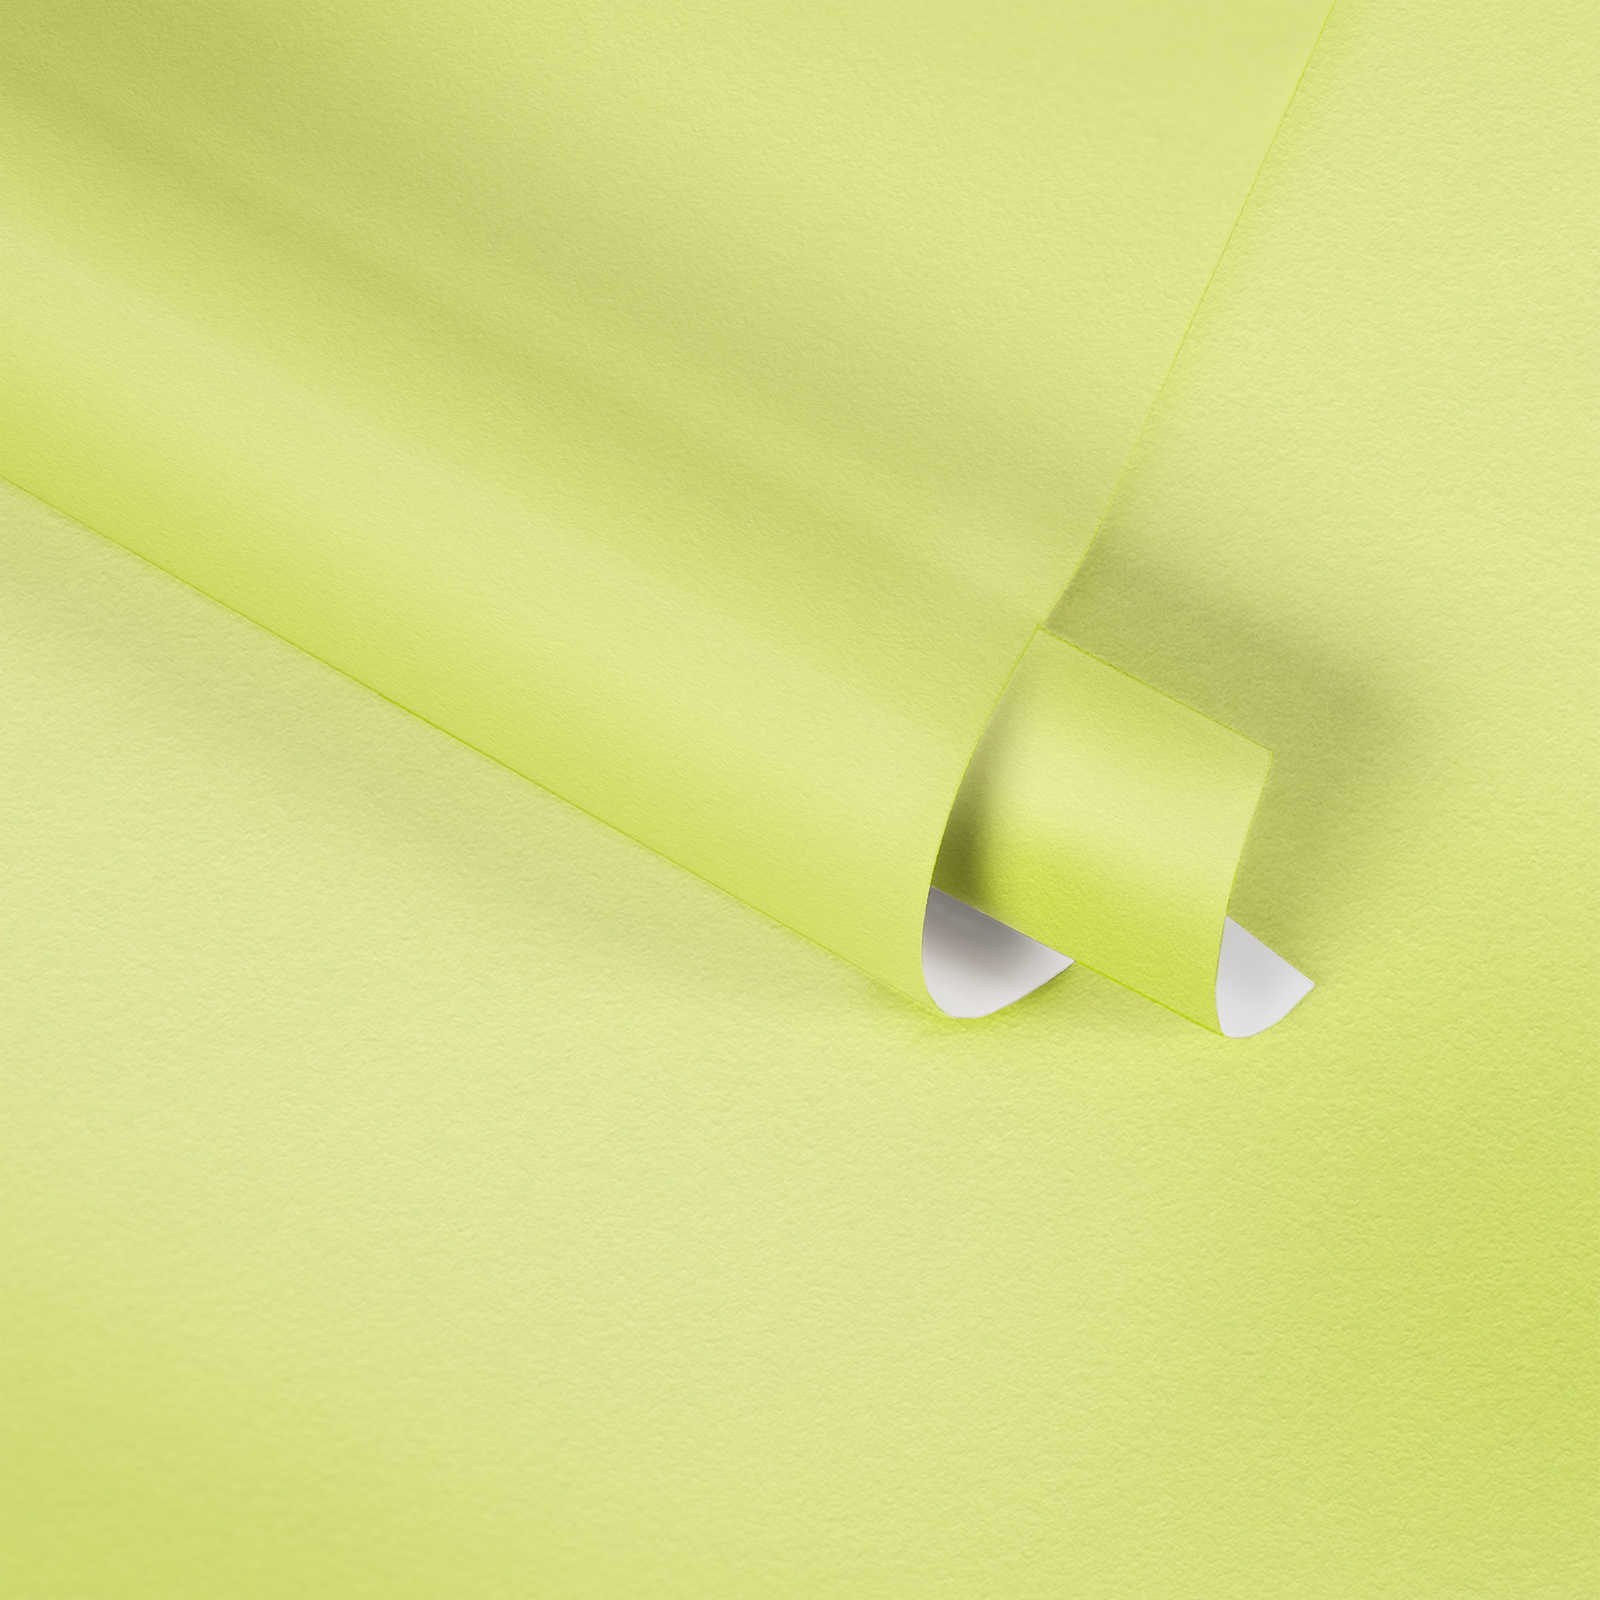             Papier peint uni vert tilleul avec effet structuré, vert clair
        